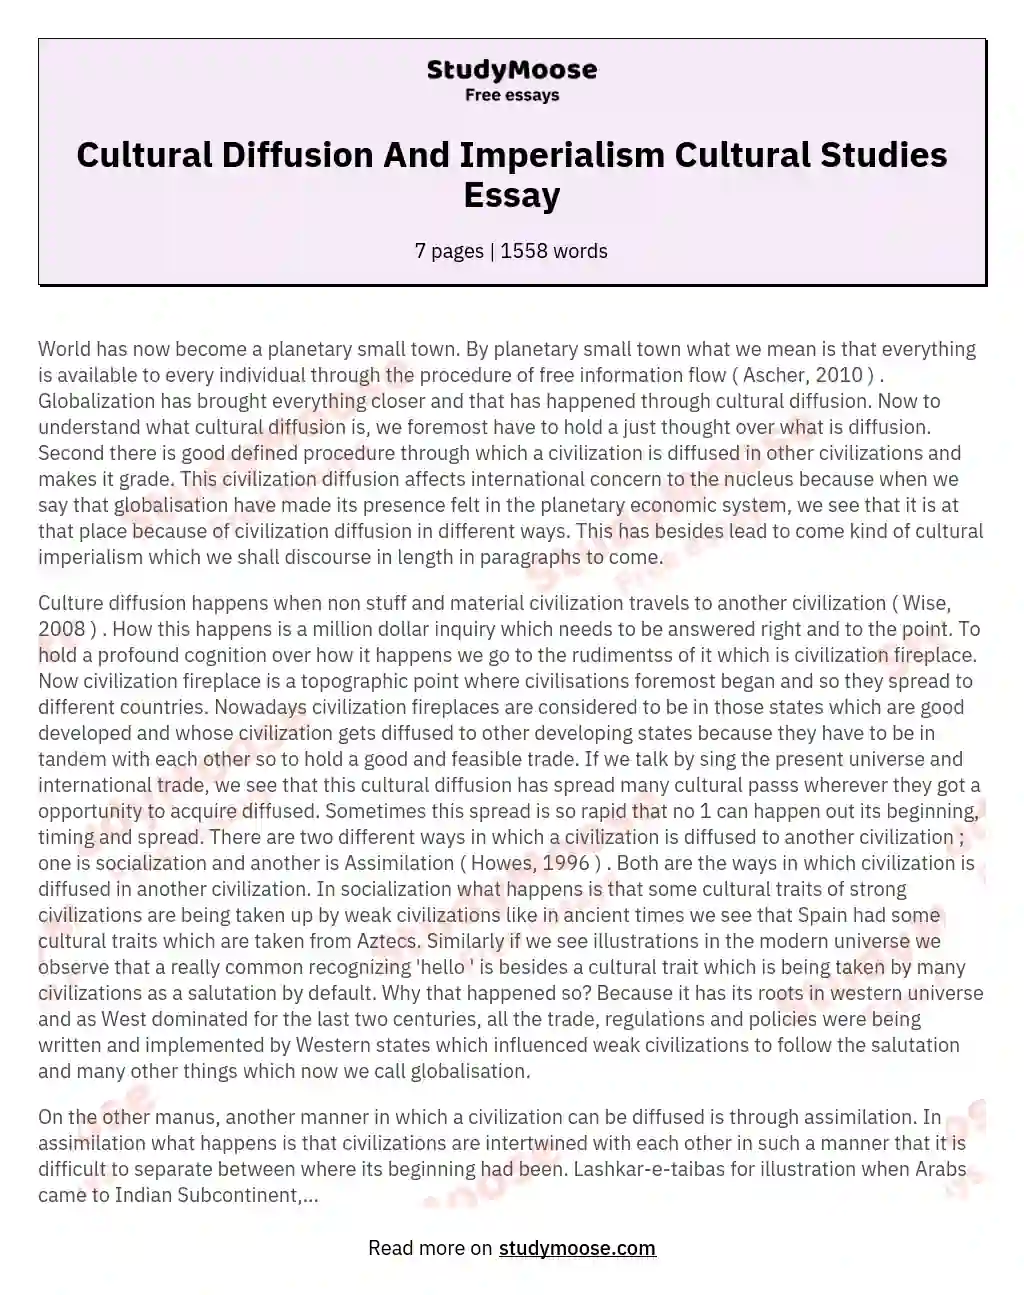 Cultural Diffusion And Imperialism Cultural Studies Essay essay